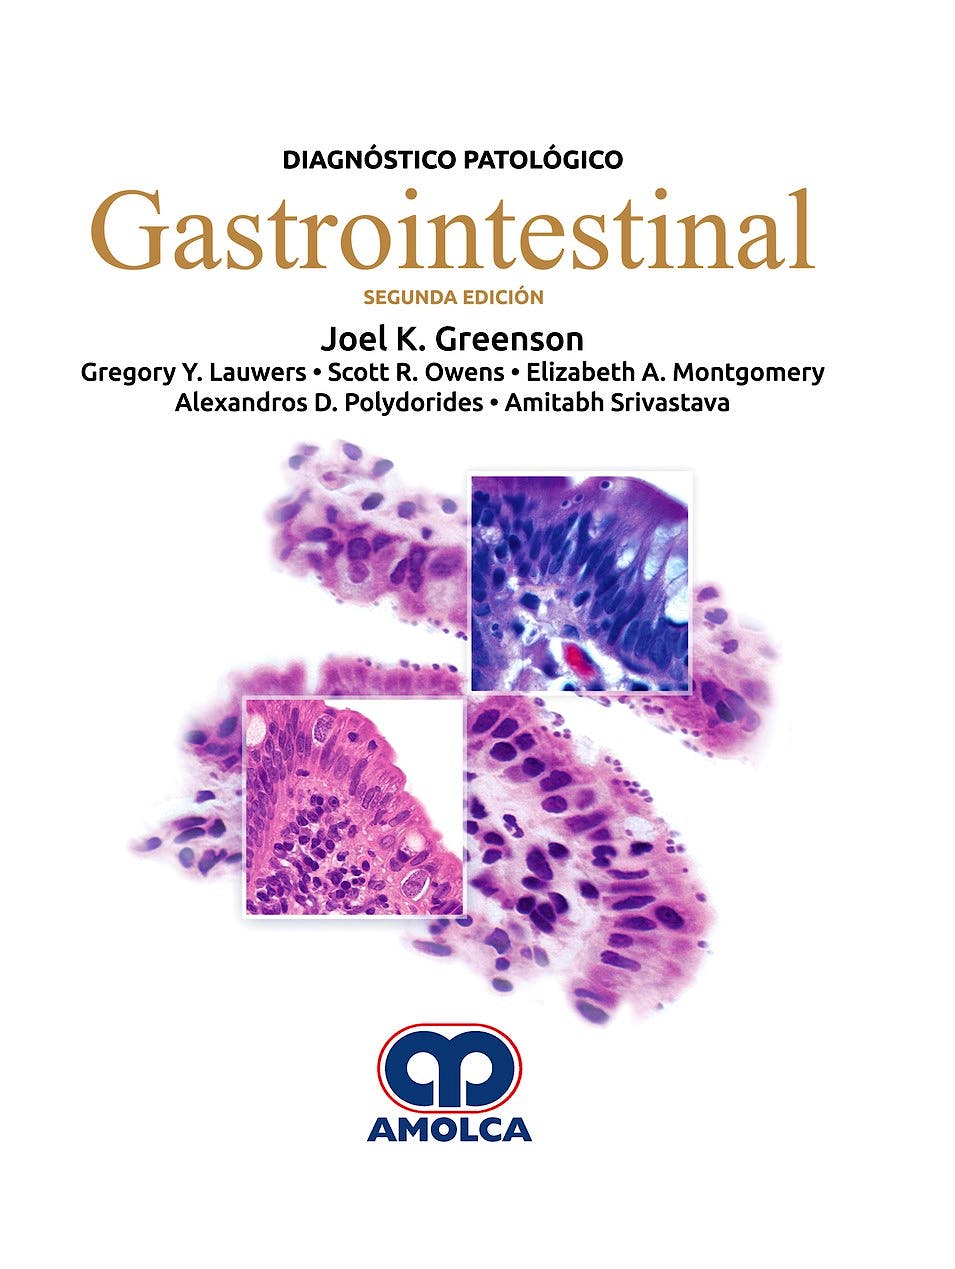 Portada del libro 9789585426474 Diagnóstico Patológico. Gastrointestinal